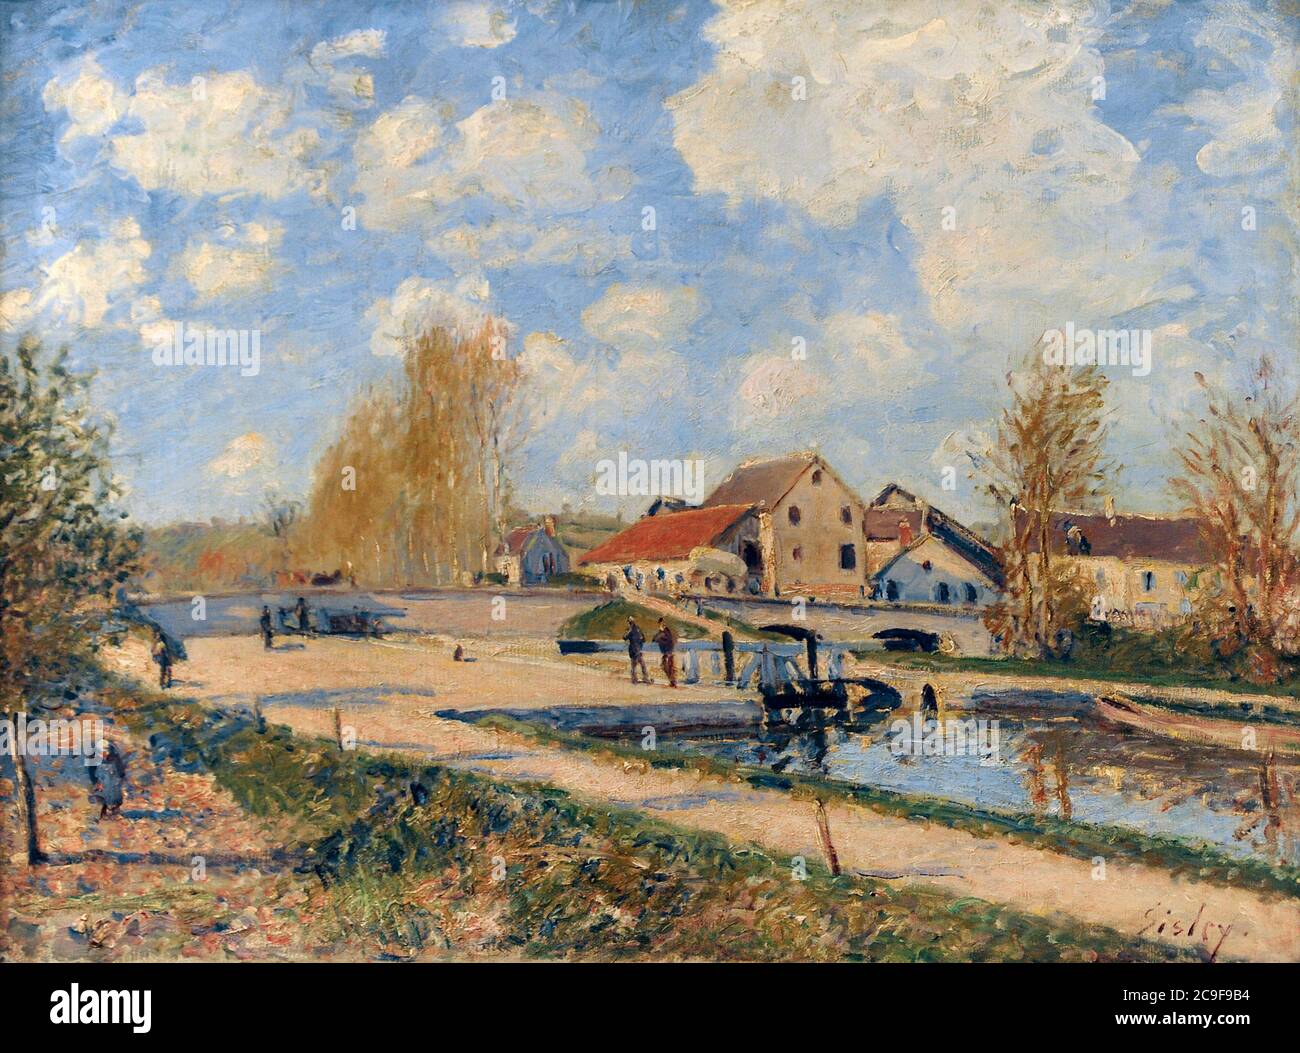 Alfred Sisley (1839-1899). Französischer Maler des Impressionismus. Die Bourgogne-Schleuse bei Moret, 1882. Nationalgalerie. Prag. Tschechische Republik. Stockfoto